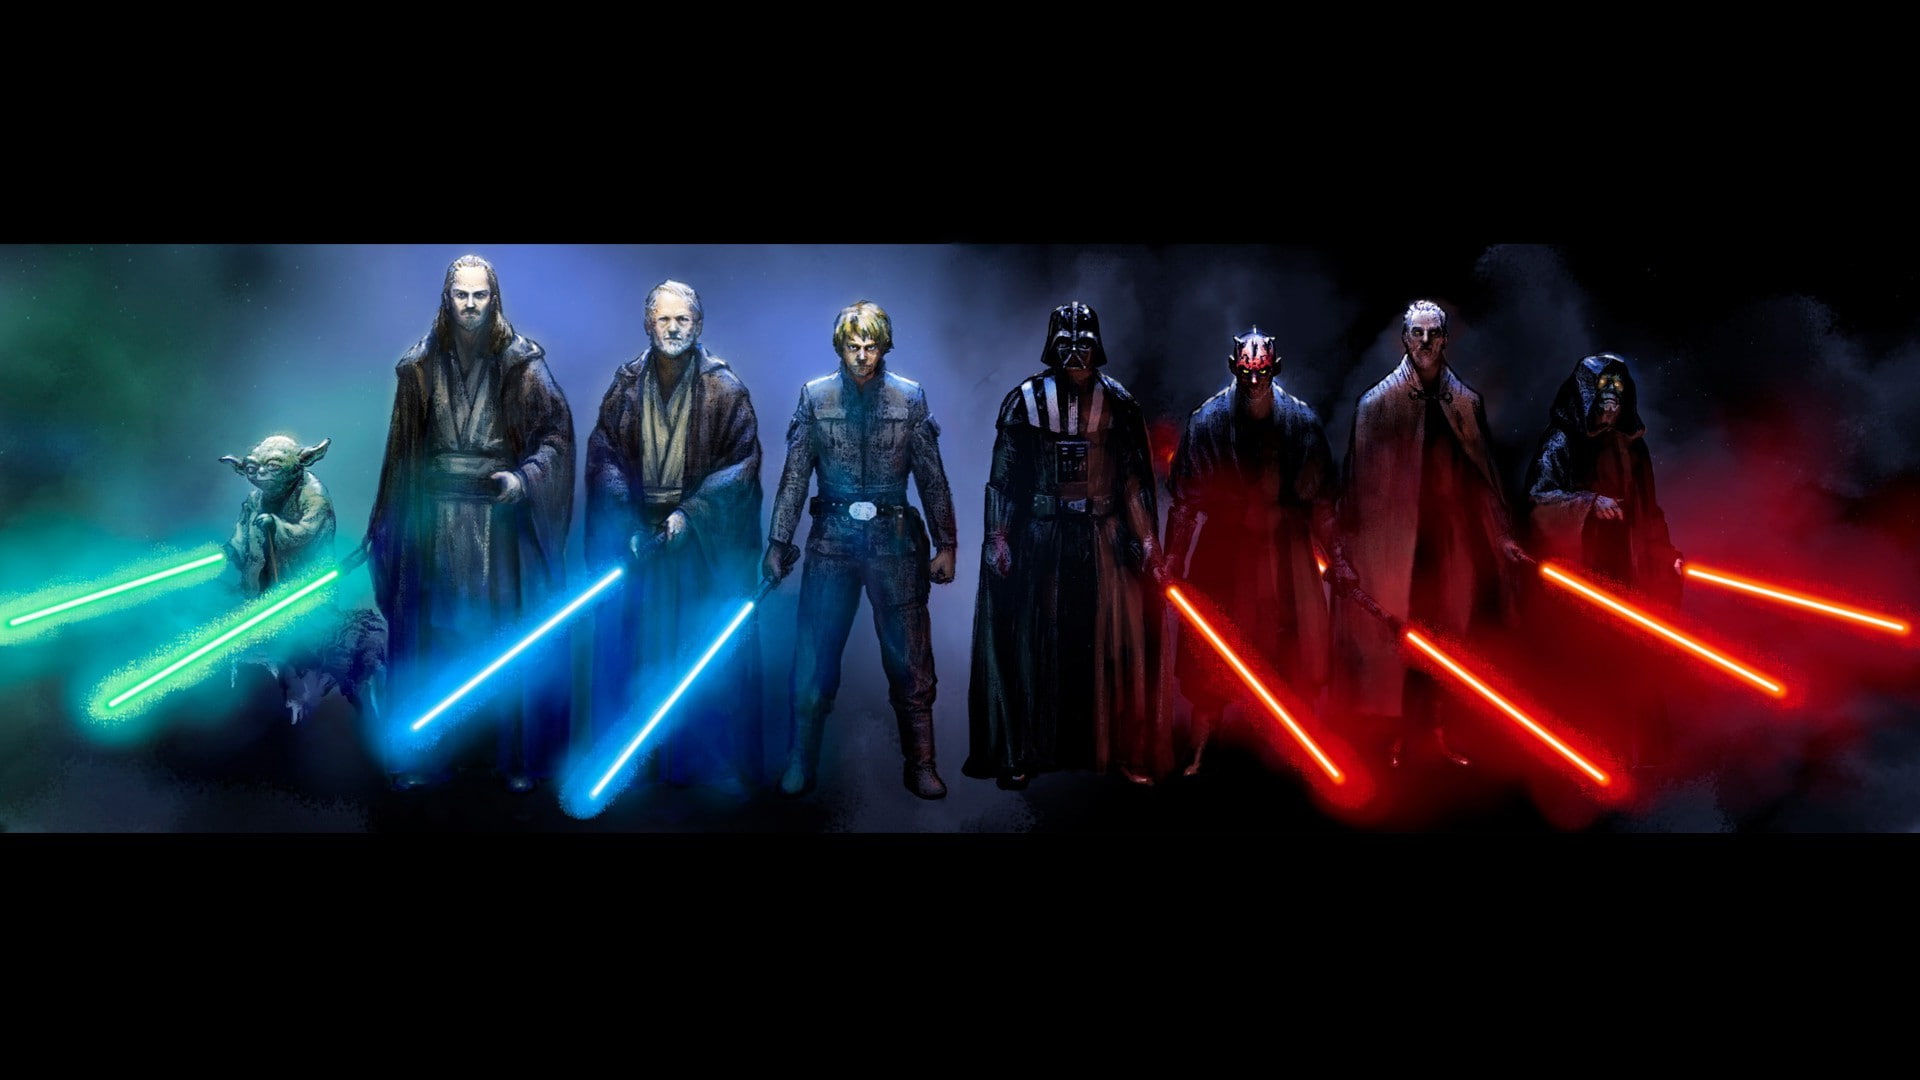 Darth Maul, darth vader, Luke Skywalker, Obi Wan Kenobi, Star Wars